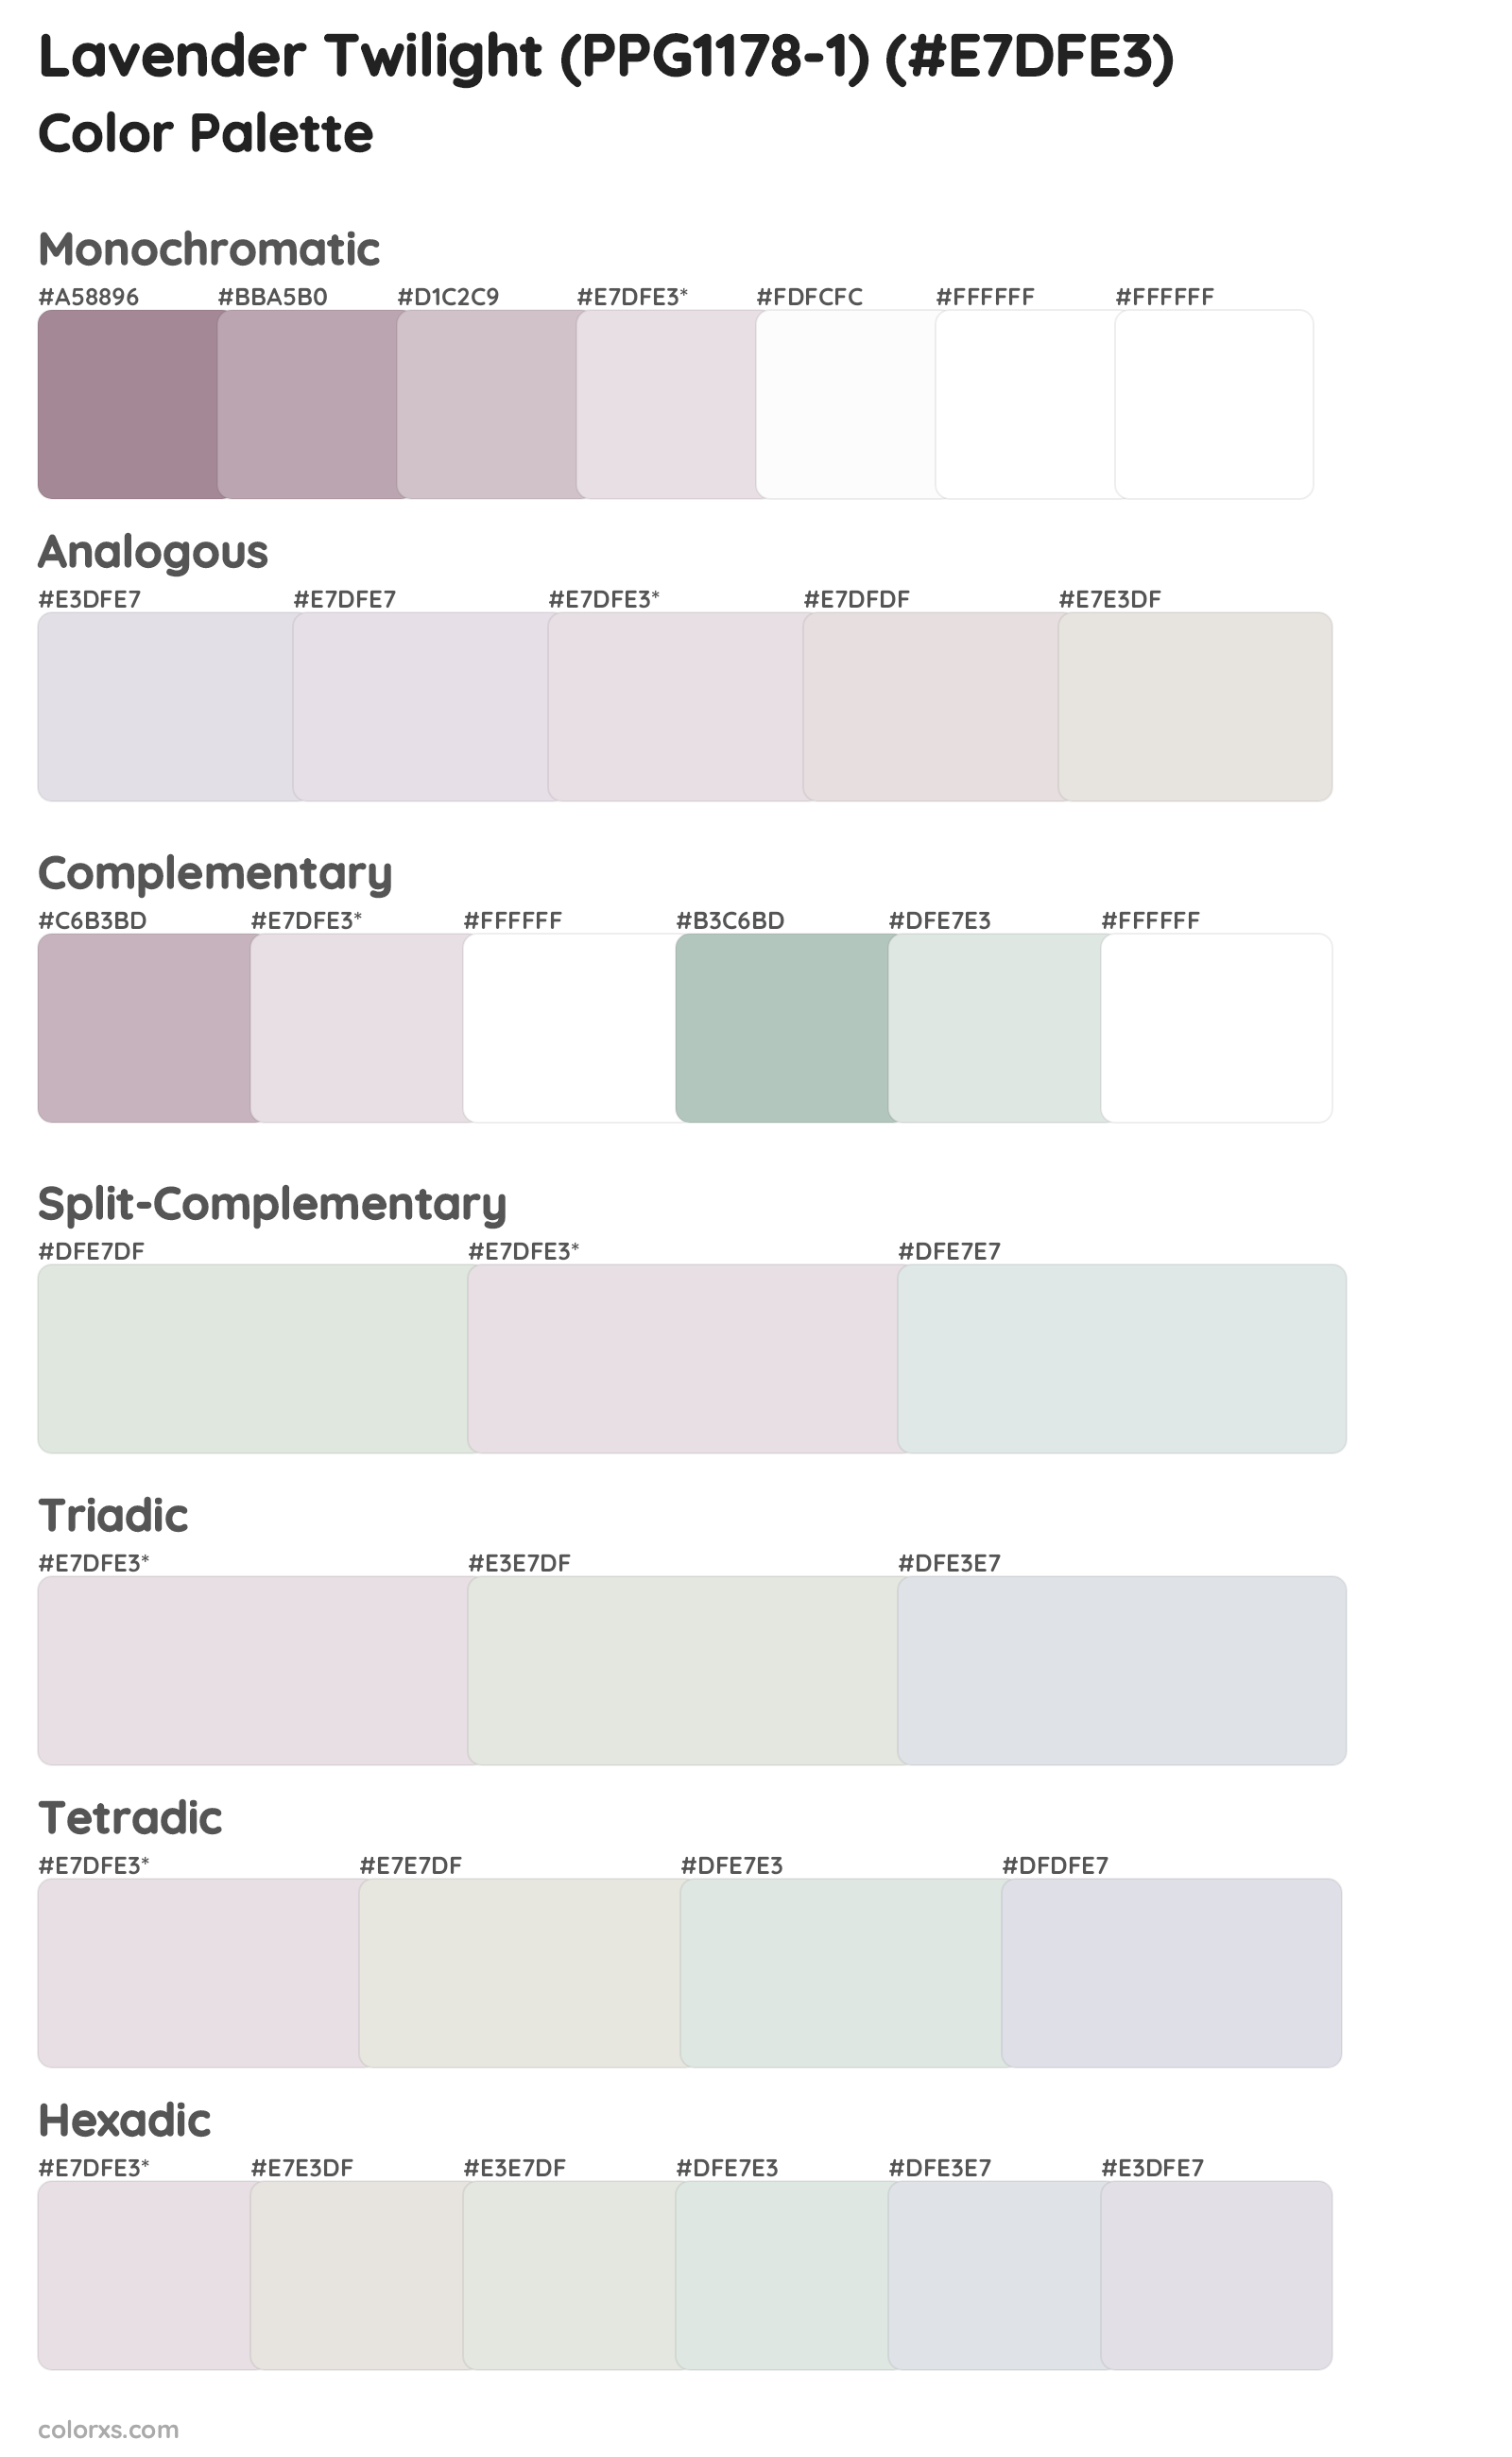 Lavender Twilight (PPG1178-1) Color Scheme Palettes